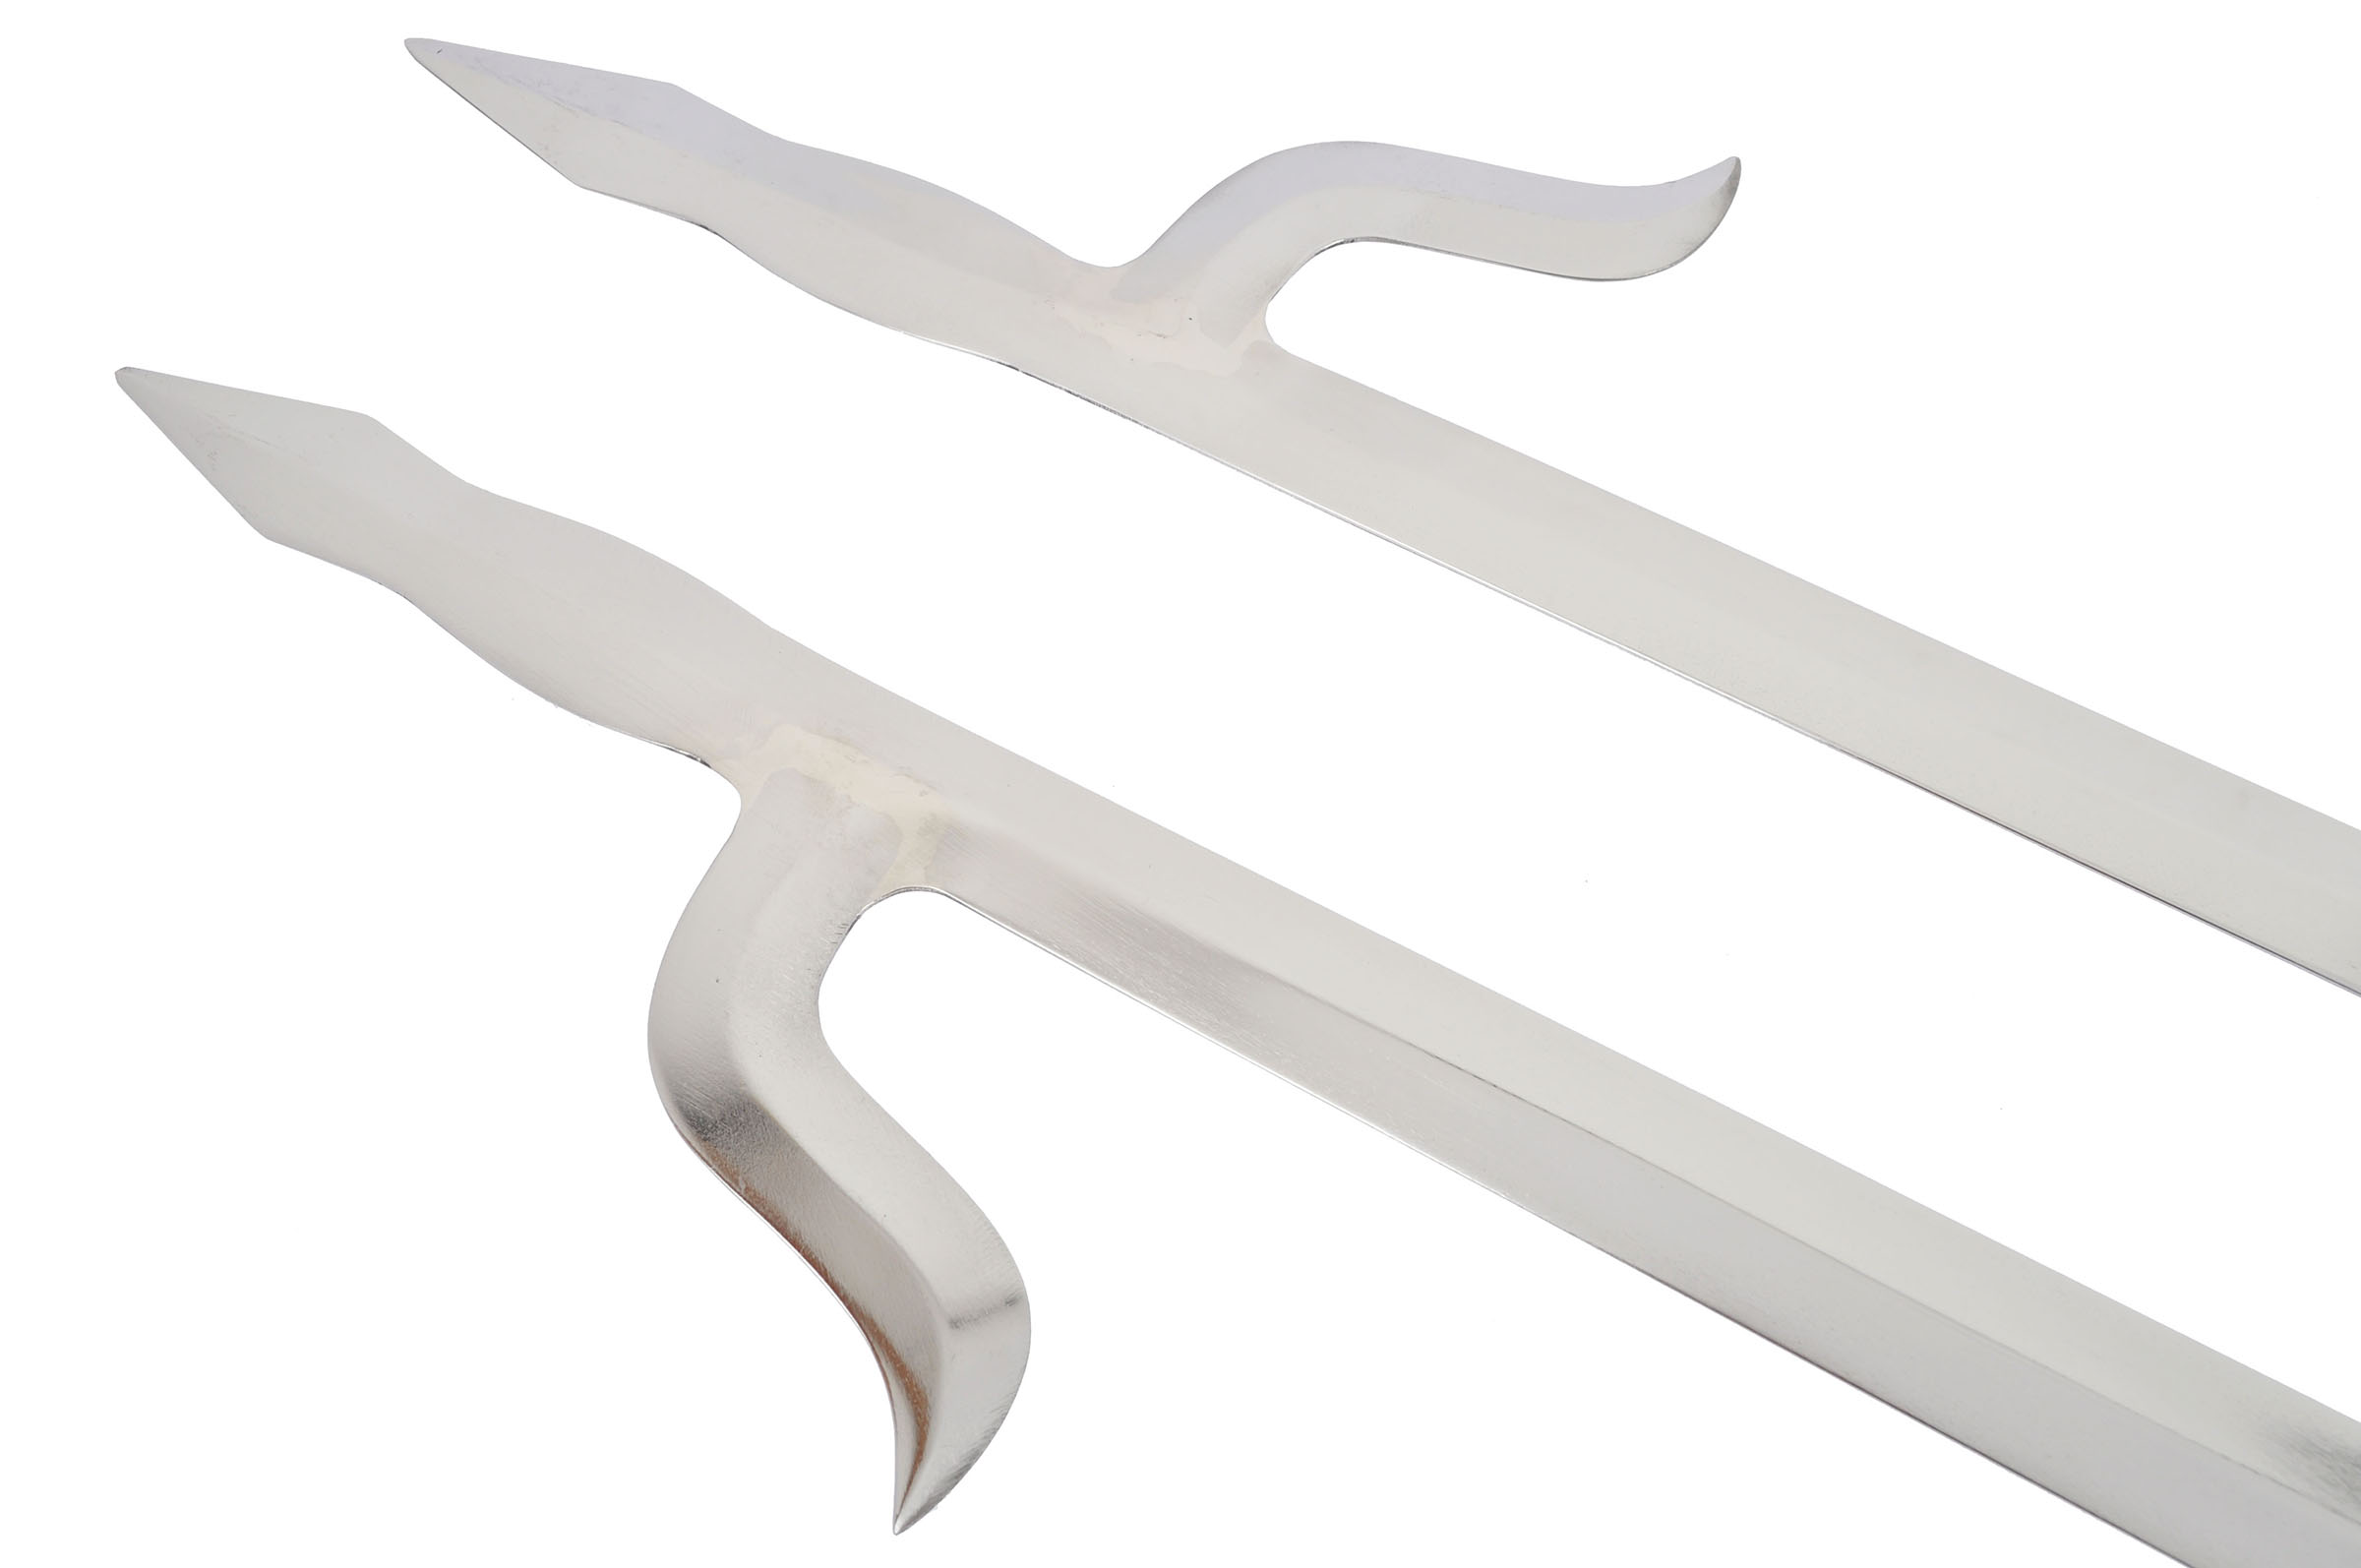 Twin Hook Swords «Shuang Gou», Jian Wang, Tiger Claw Style